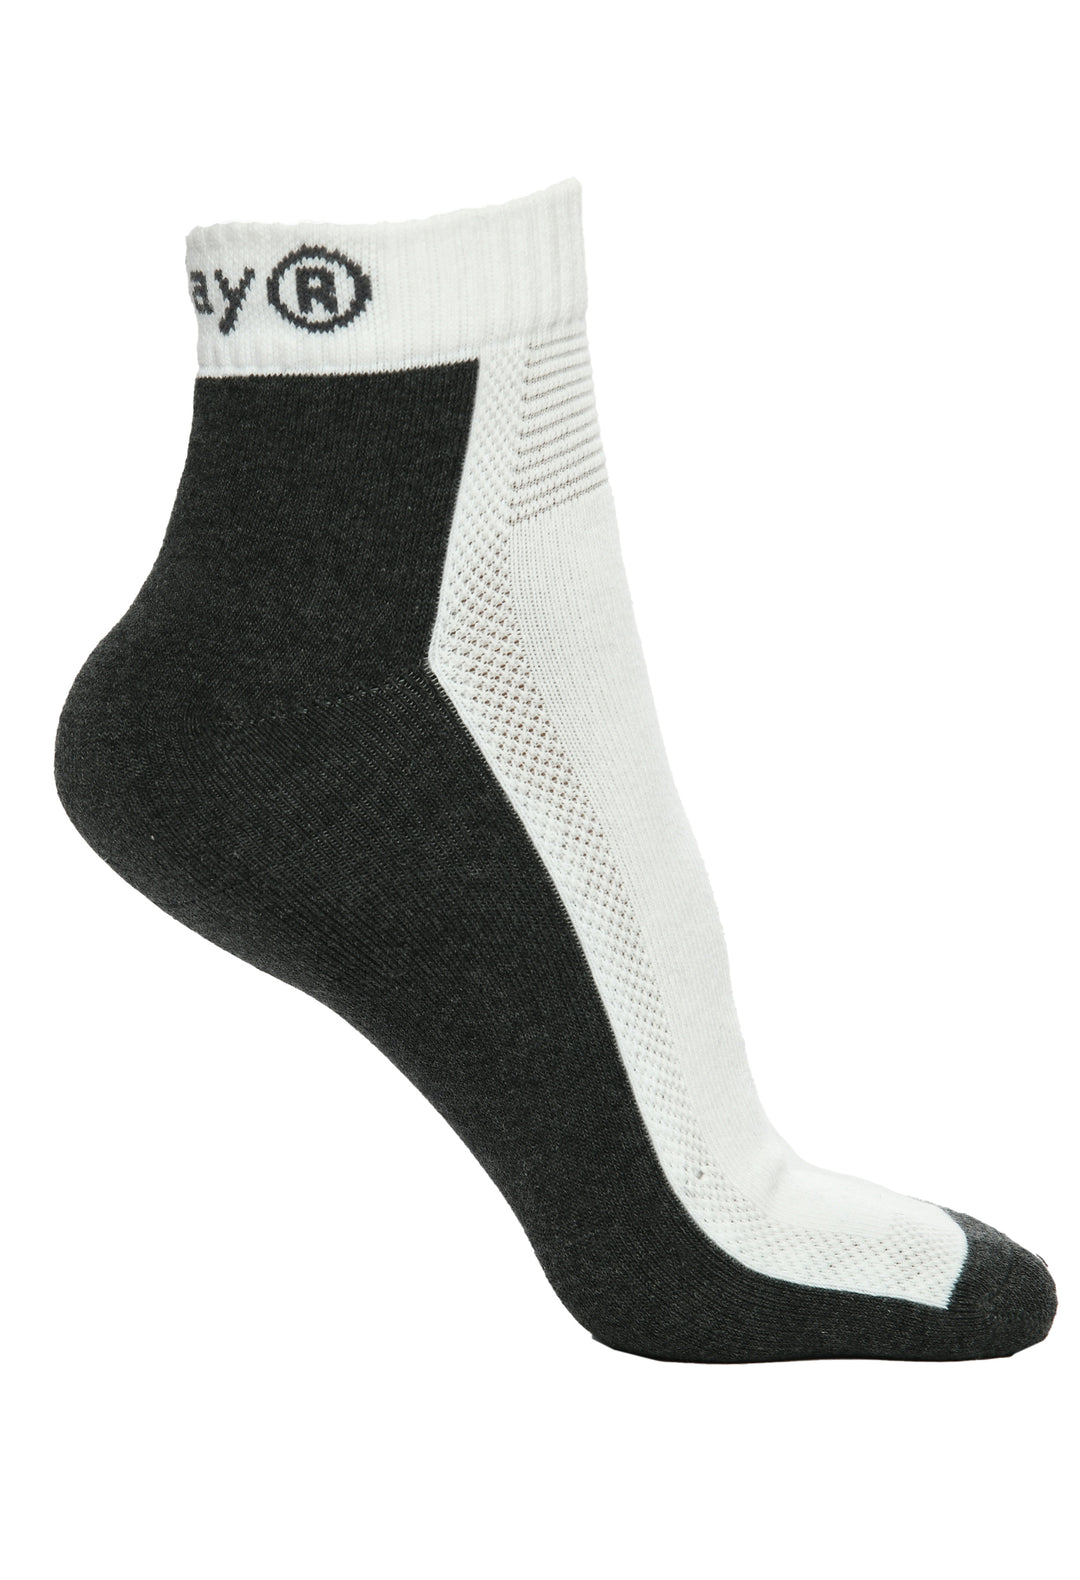 Men Ankle Socks (Pack of 1)